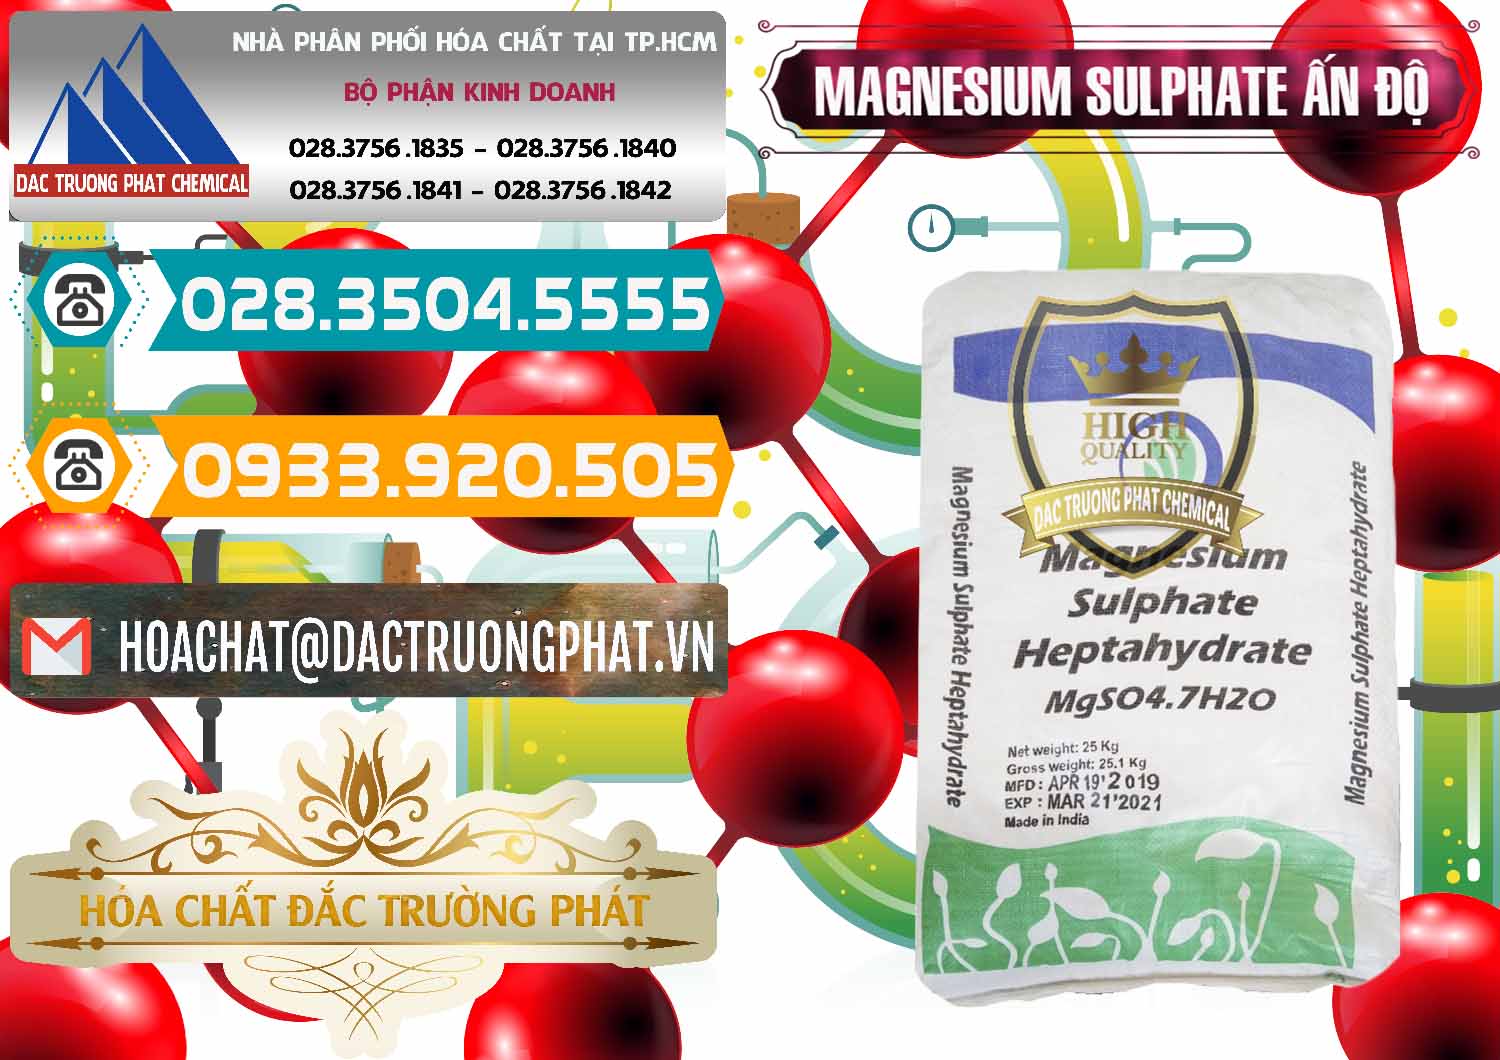 Cty bán & cung cấp MGSO4.7H2O – Magnesium Sulphate Heptahydrate Ấn Độ India - 0362 - Nhà phân phối & cung ứng hóa chất tại TP.HCM - congtyhoachat.vn